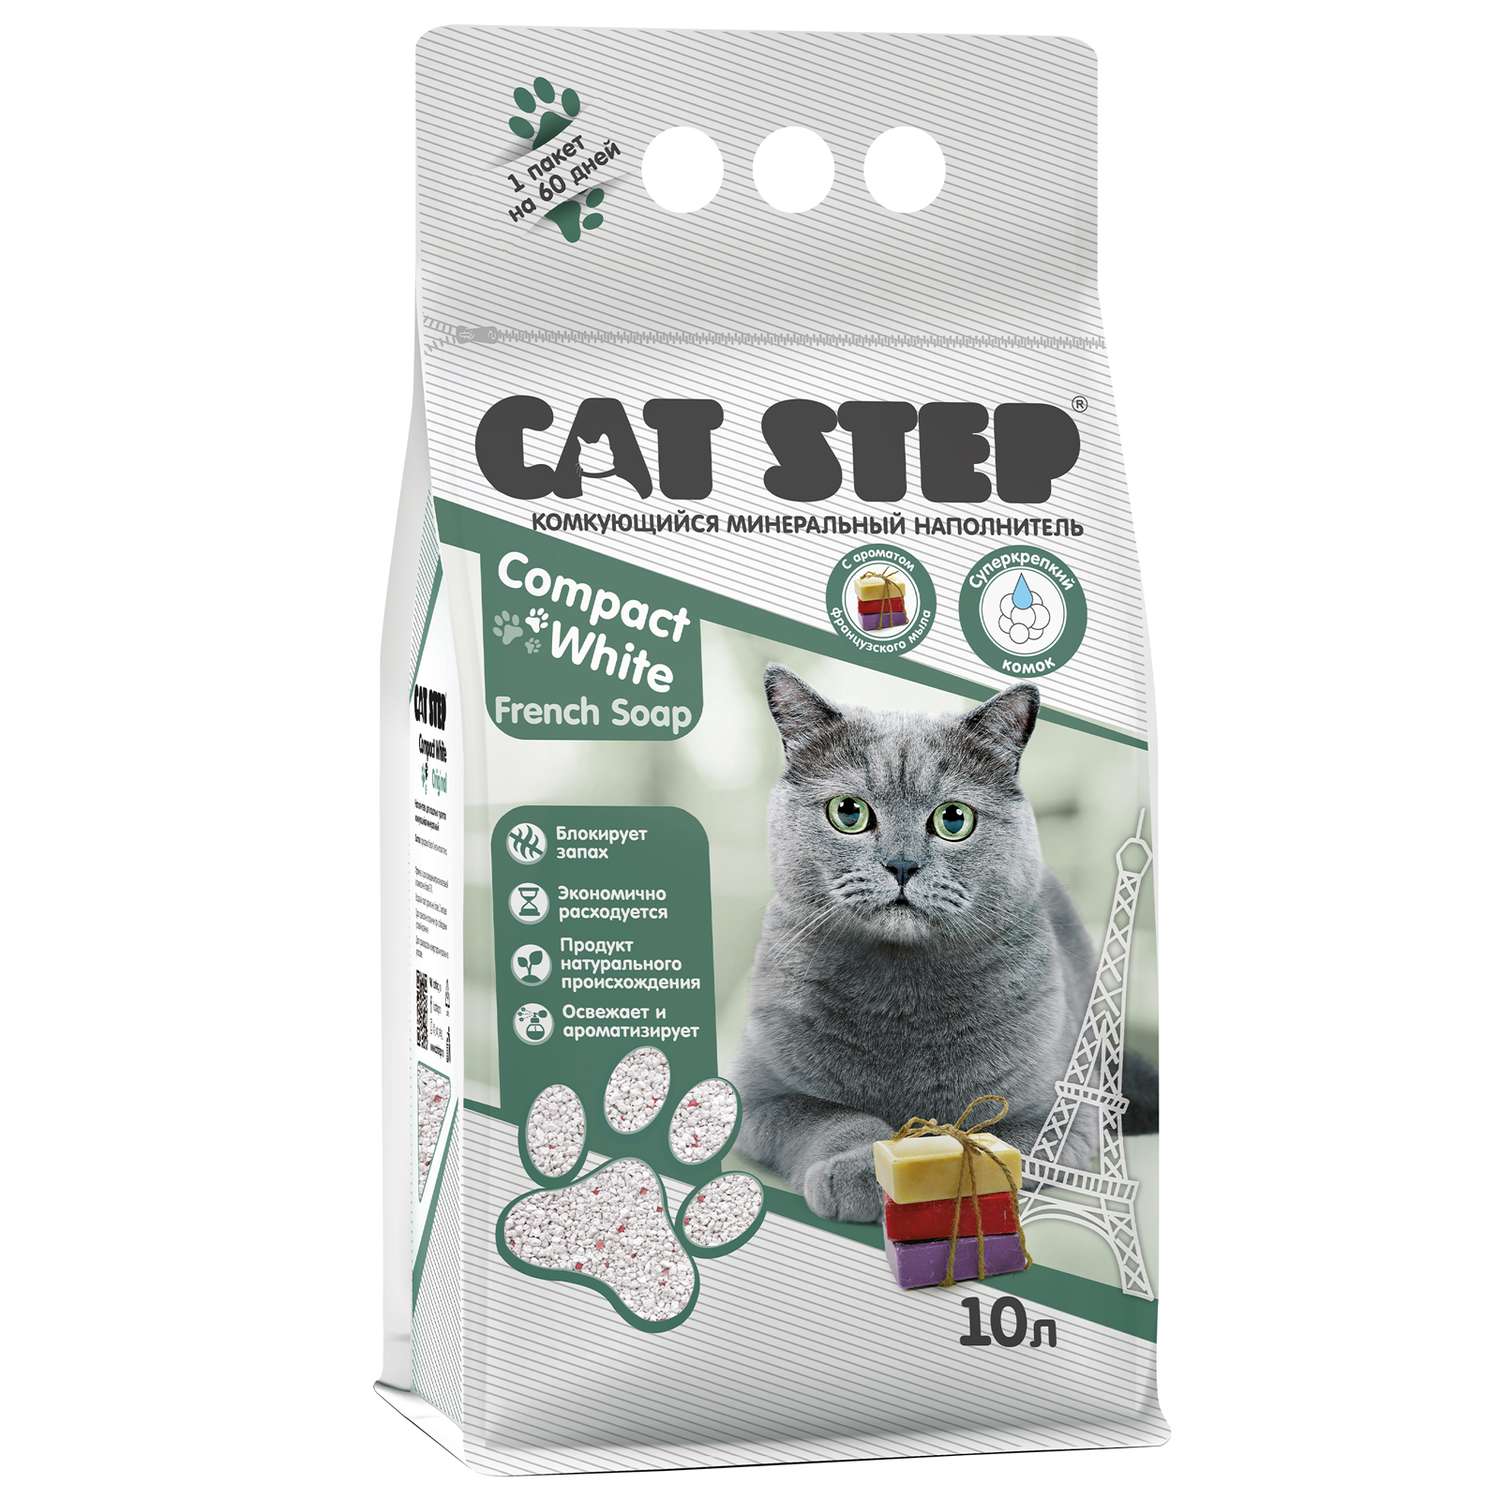 Наполнитель для кошек Cat Step Compact White French Soap комкующийся минеральный 10л - фото 1